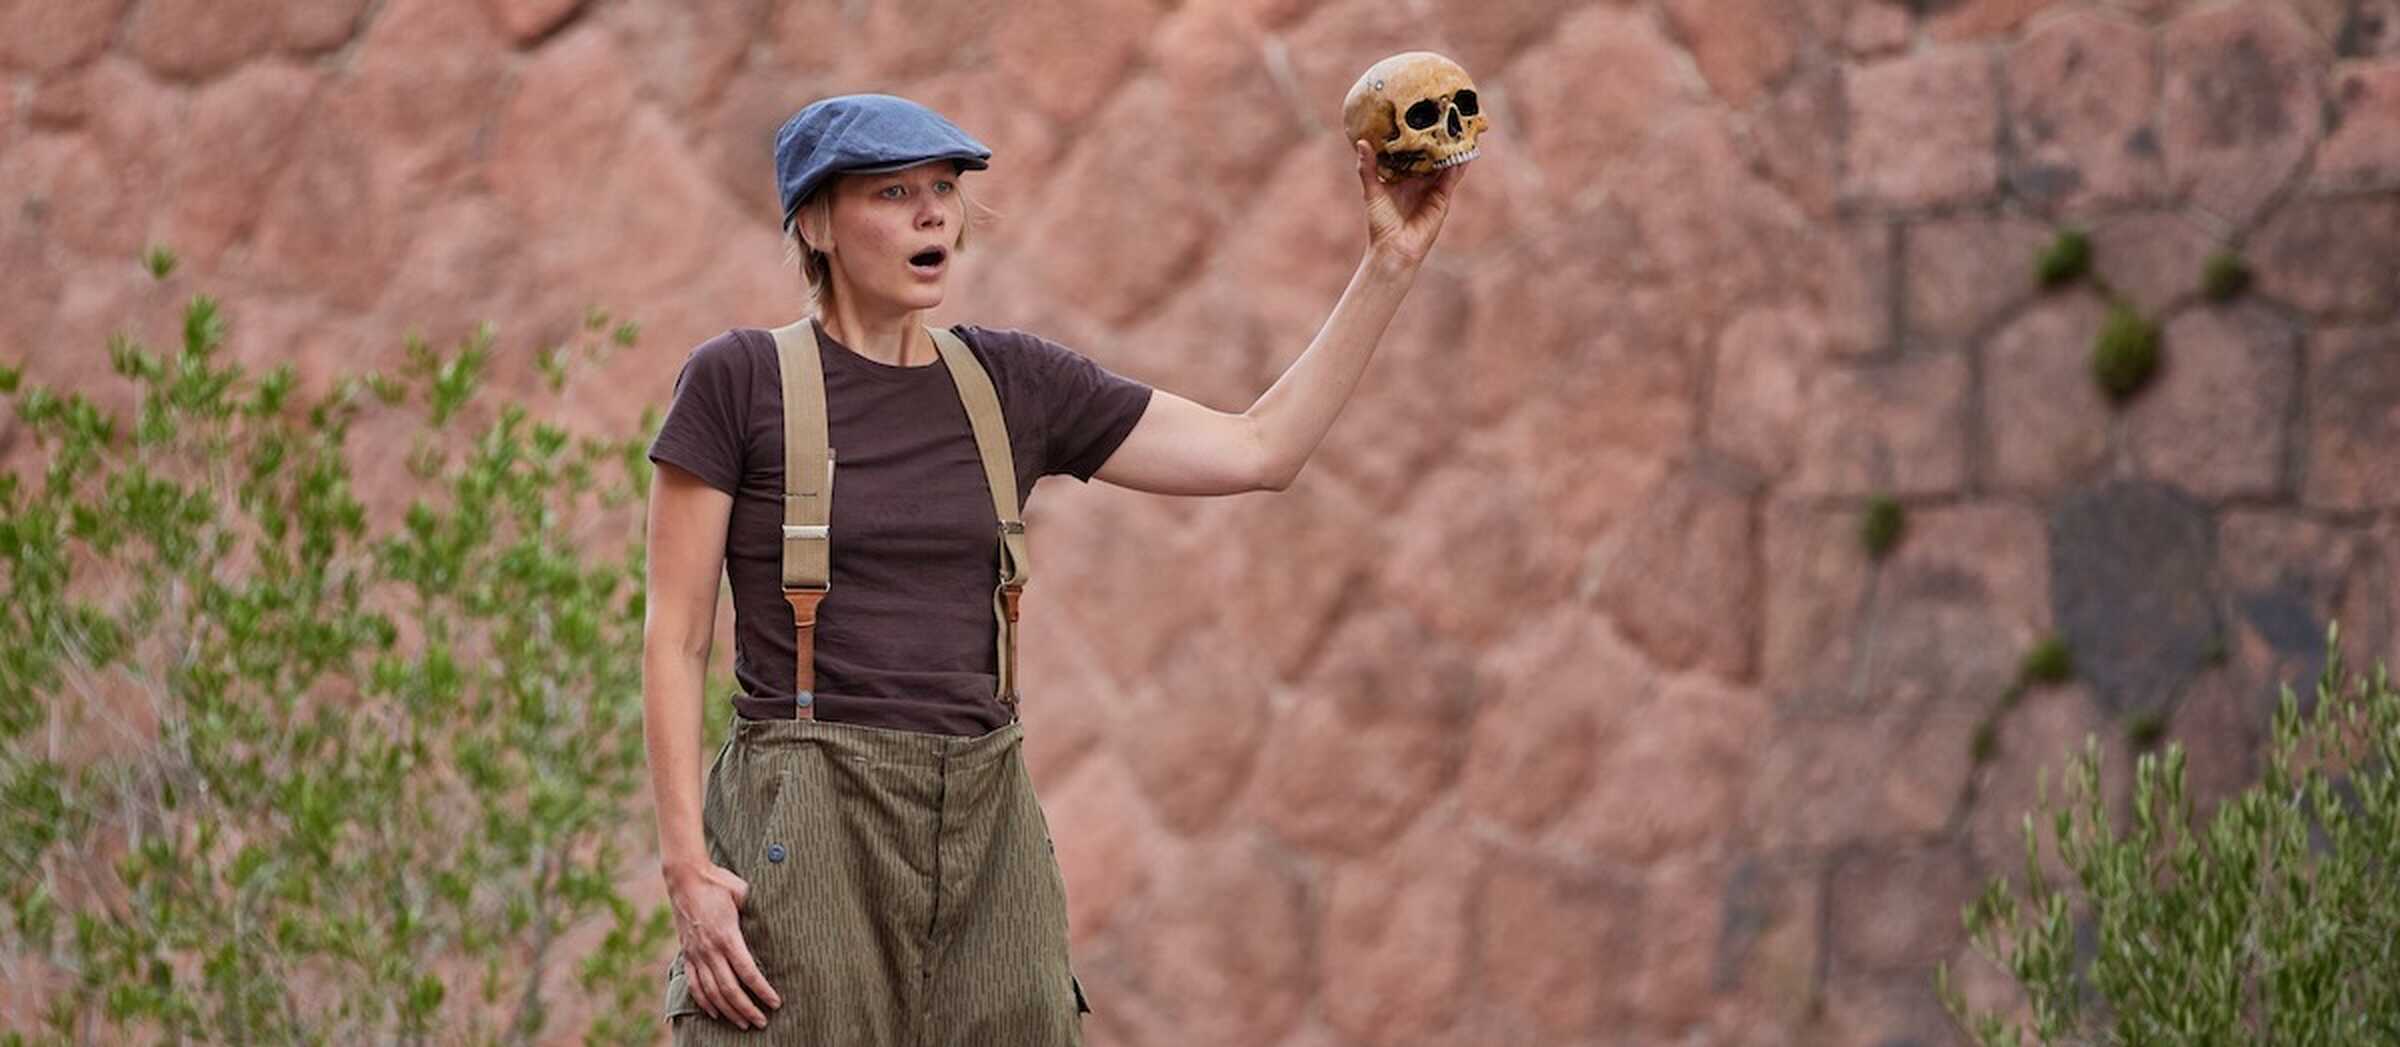 Eine Schauspielerin steht auf einer Open-Air-Bühne und spricht, während sie einen Totenschädel hochhält.